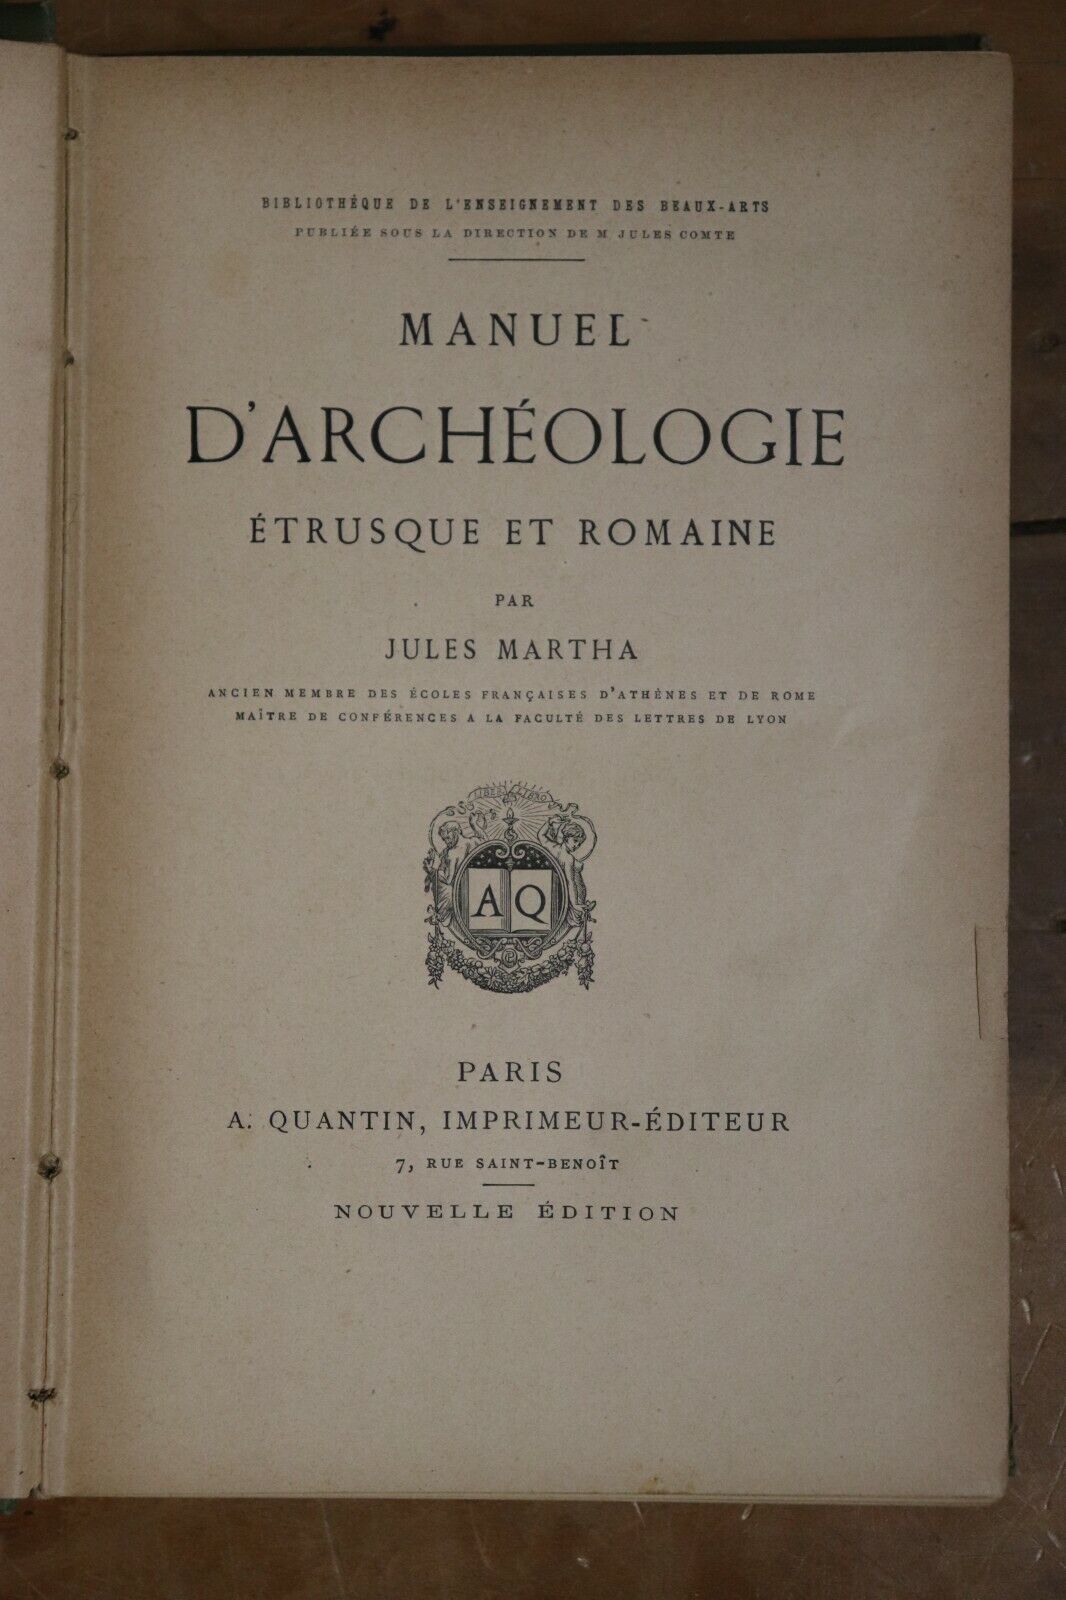 Manuel d'archéologie étrusque et romaine - 1884 - Rare Antique Archeology Book - 0